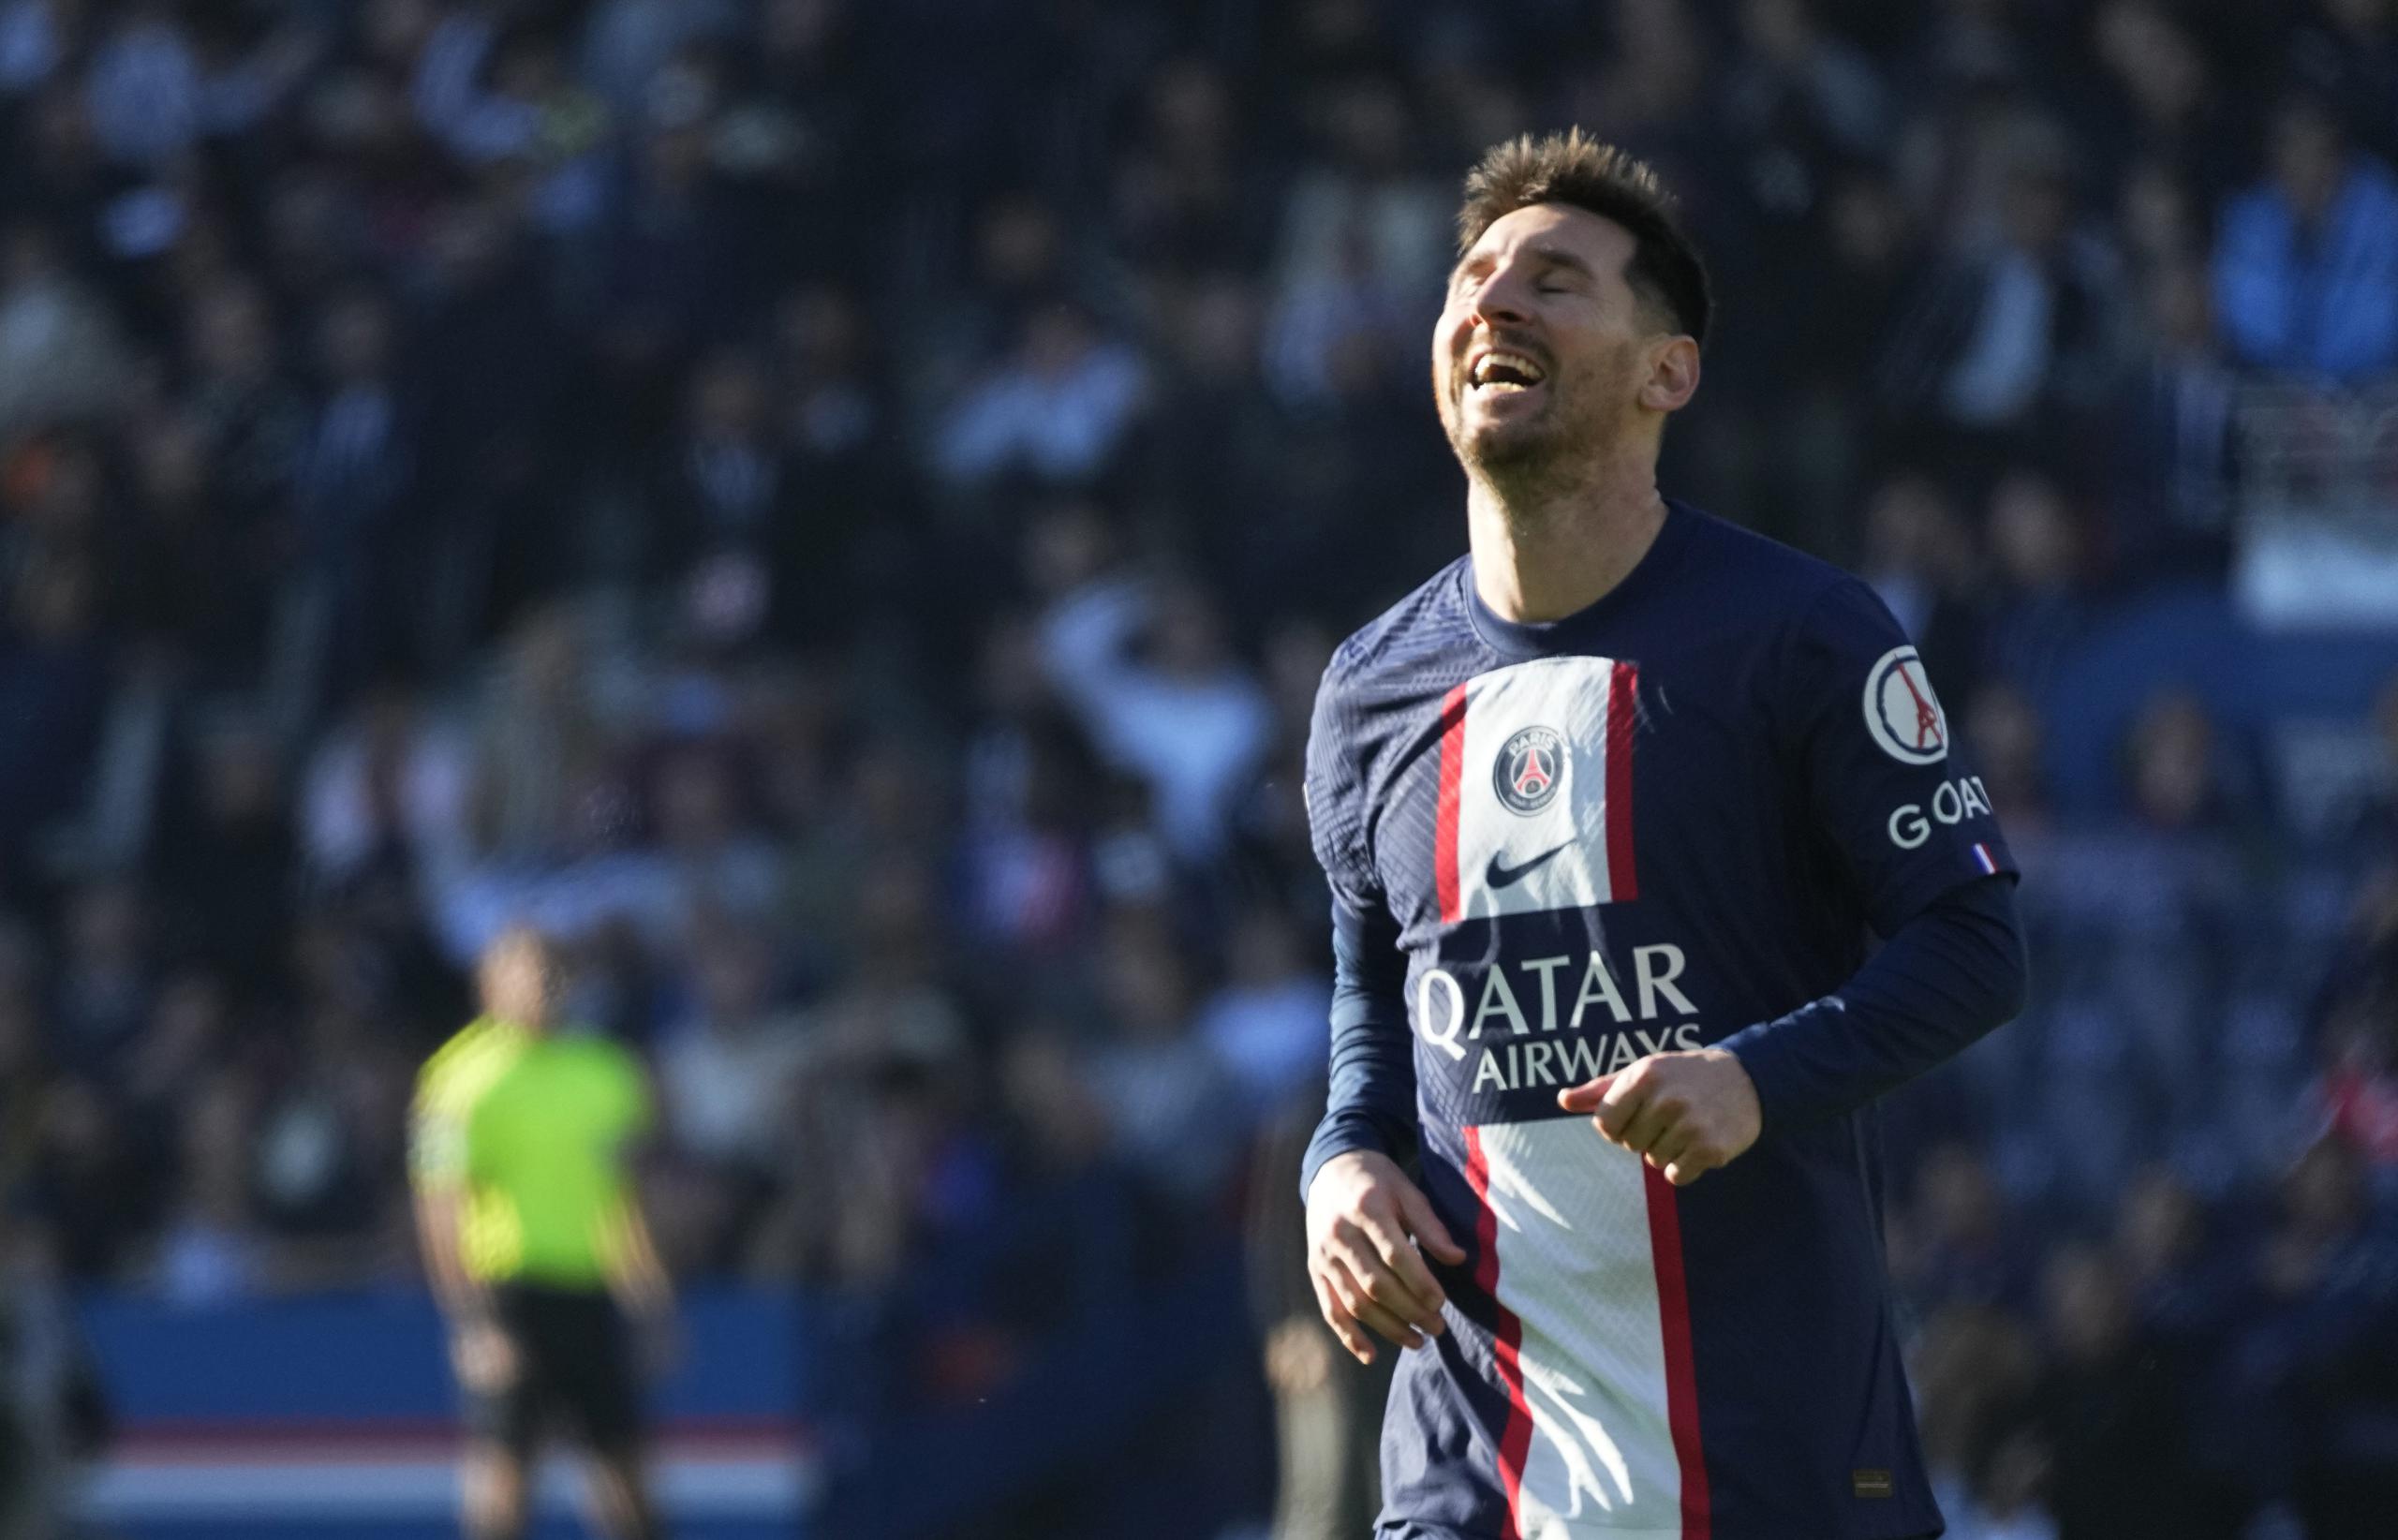 El astro argentino es el último de los jugadores del Saint-Germain en reanudar los entrenamientos luego de Qatar 2022.